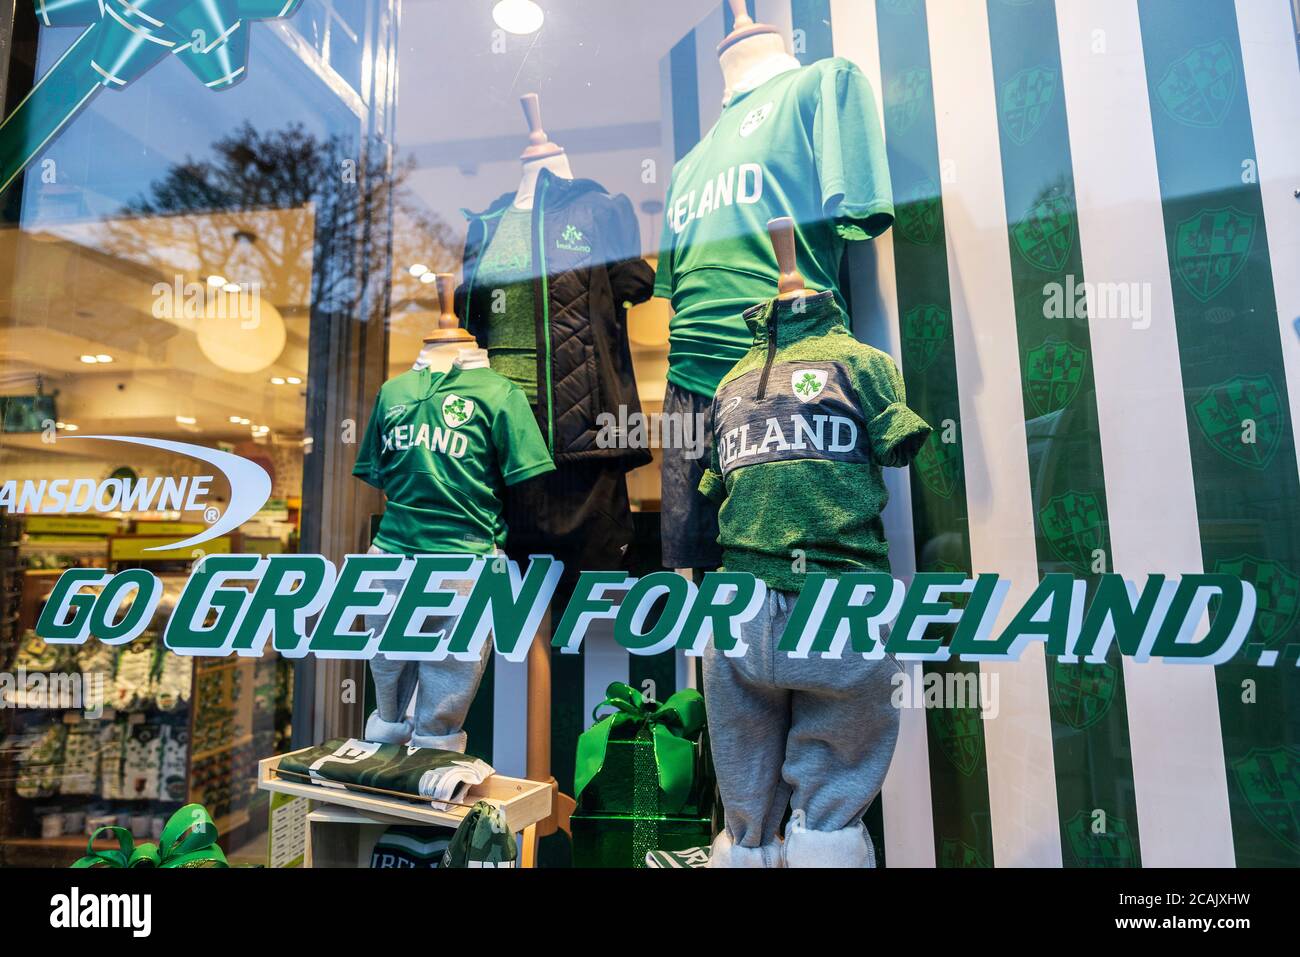 Dublin, Irlande - 30 décembre 2019 : exposition d'un magasin de vêtements Go Green pour l'Irlande à Dublin, Irlande Banque D'Images